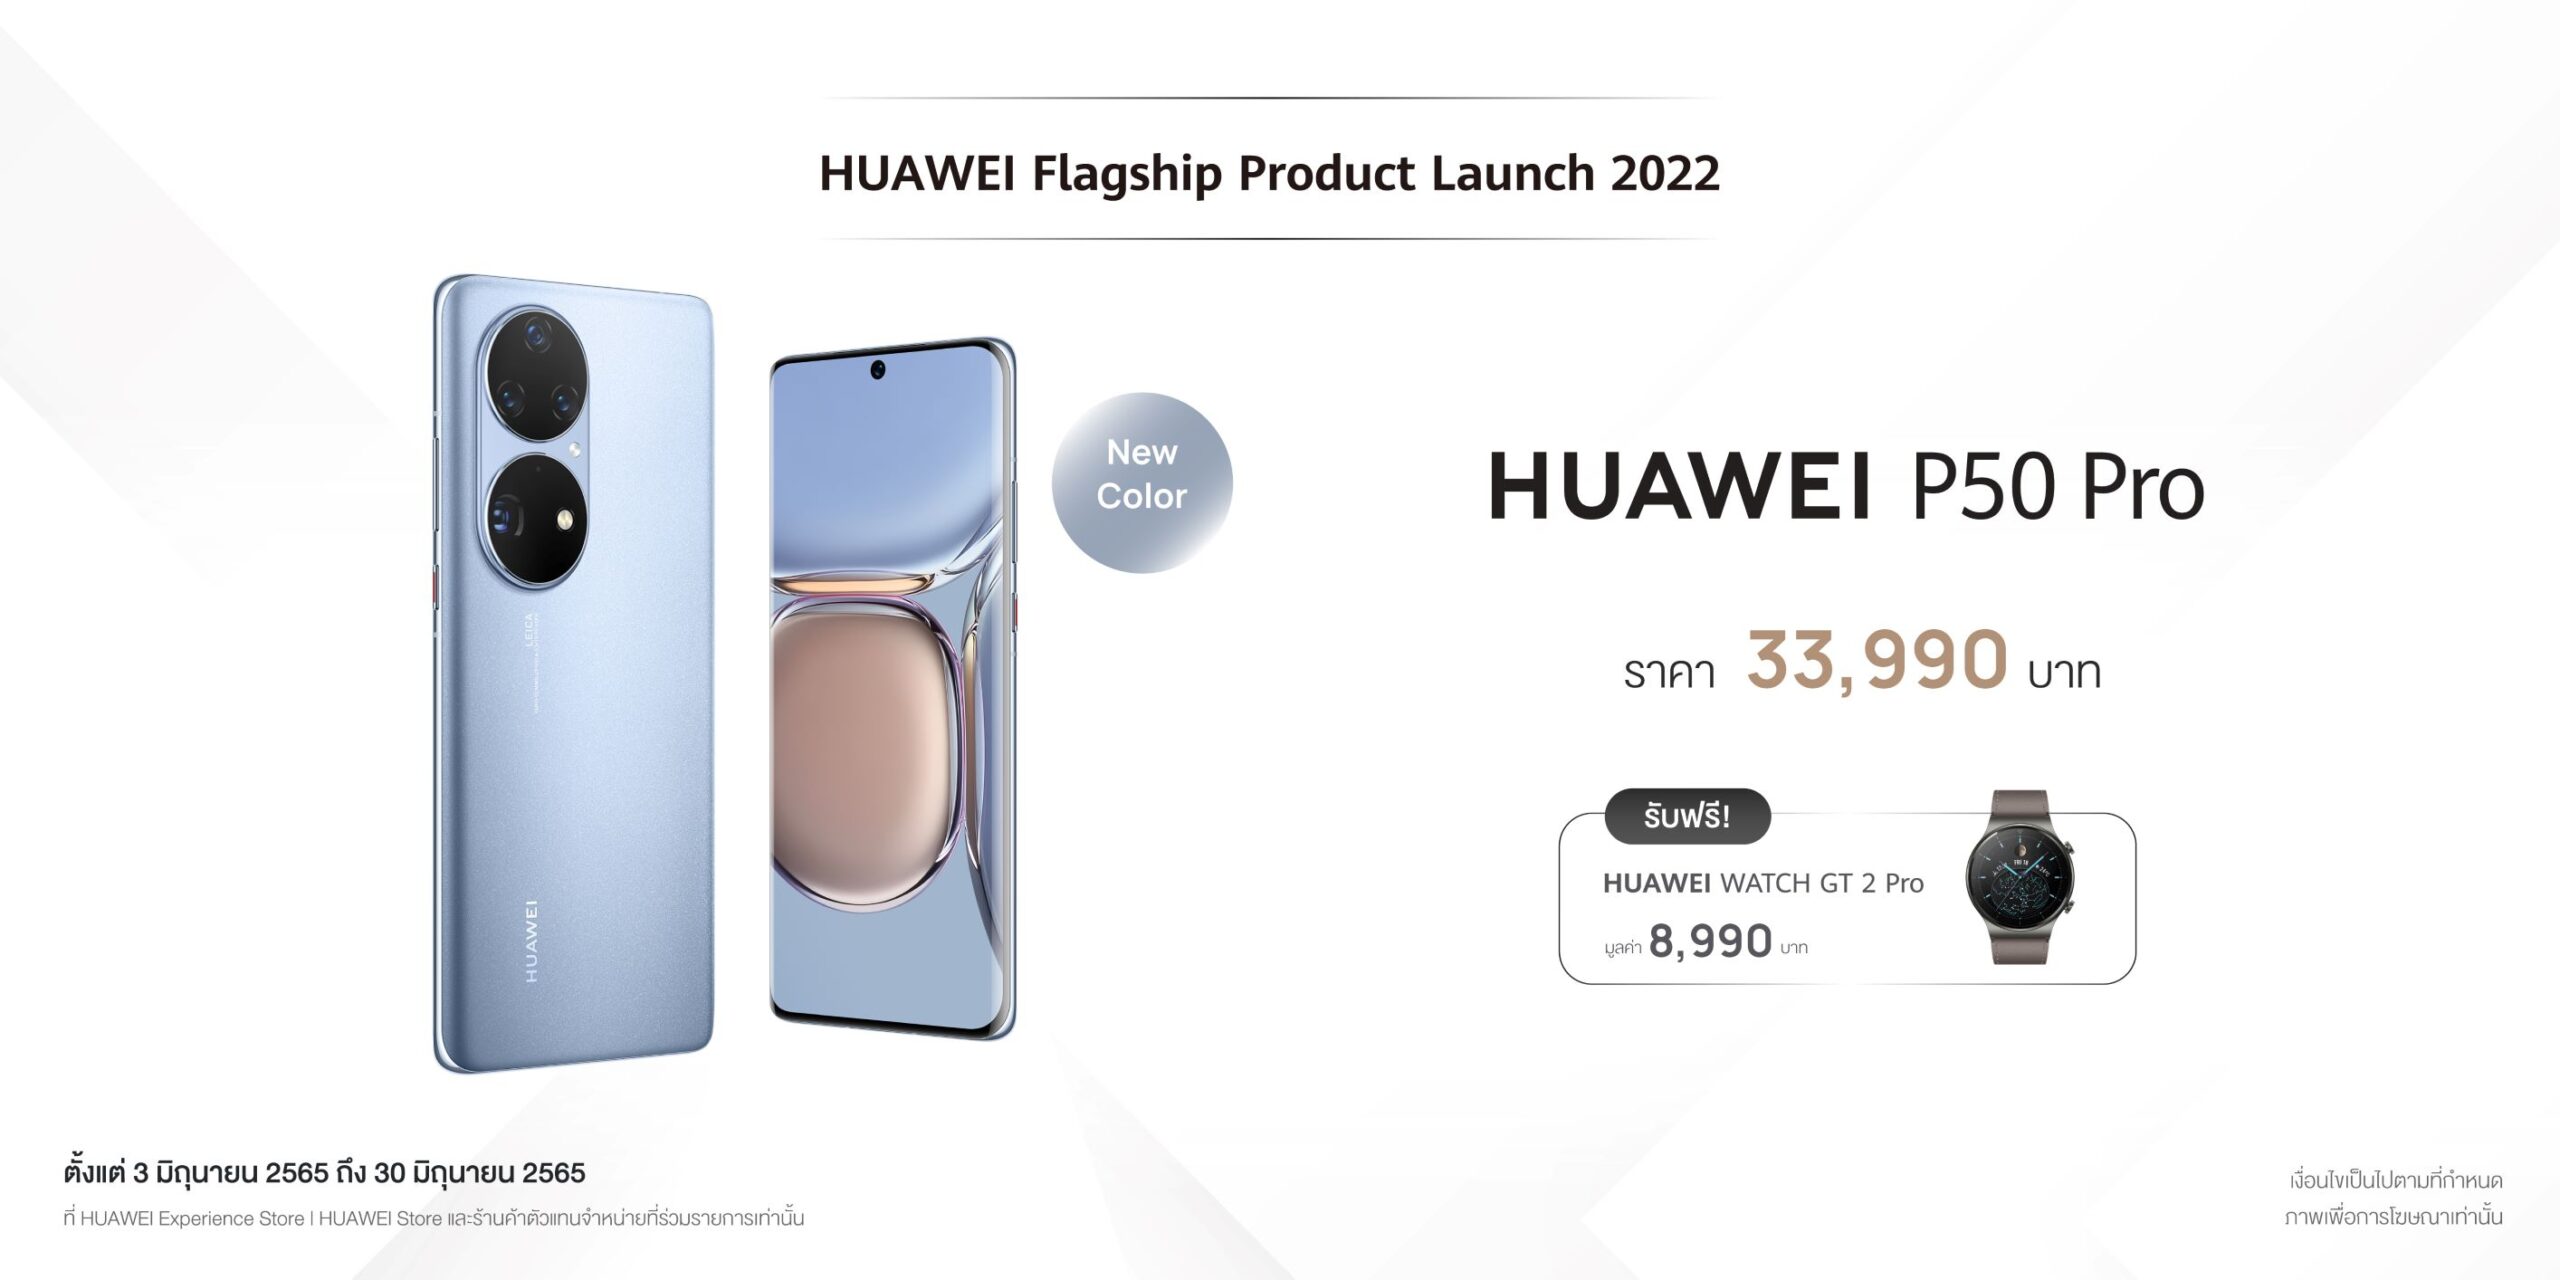 HUAWEI-P50-Pro Price